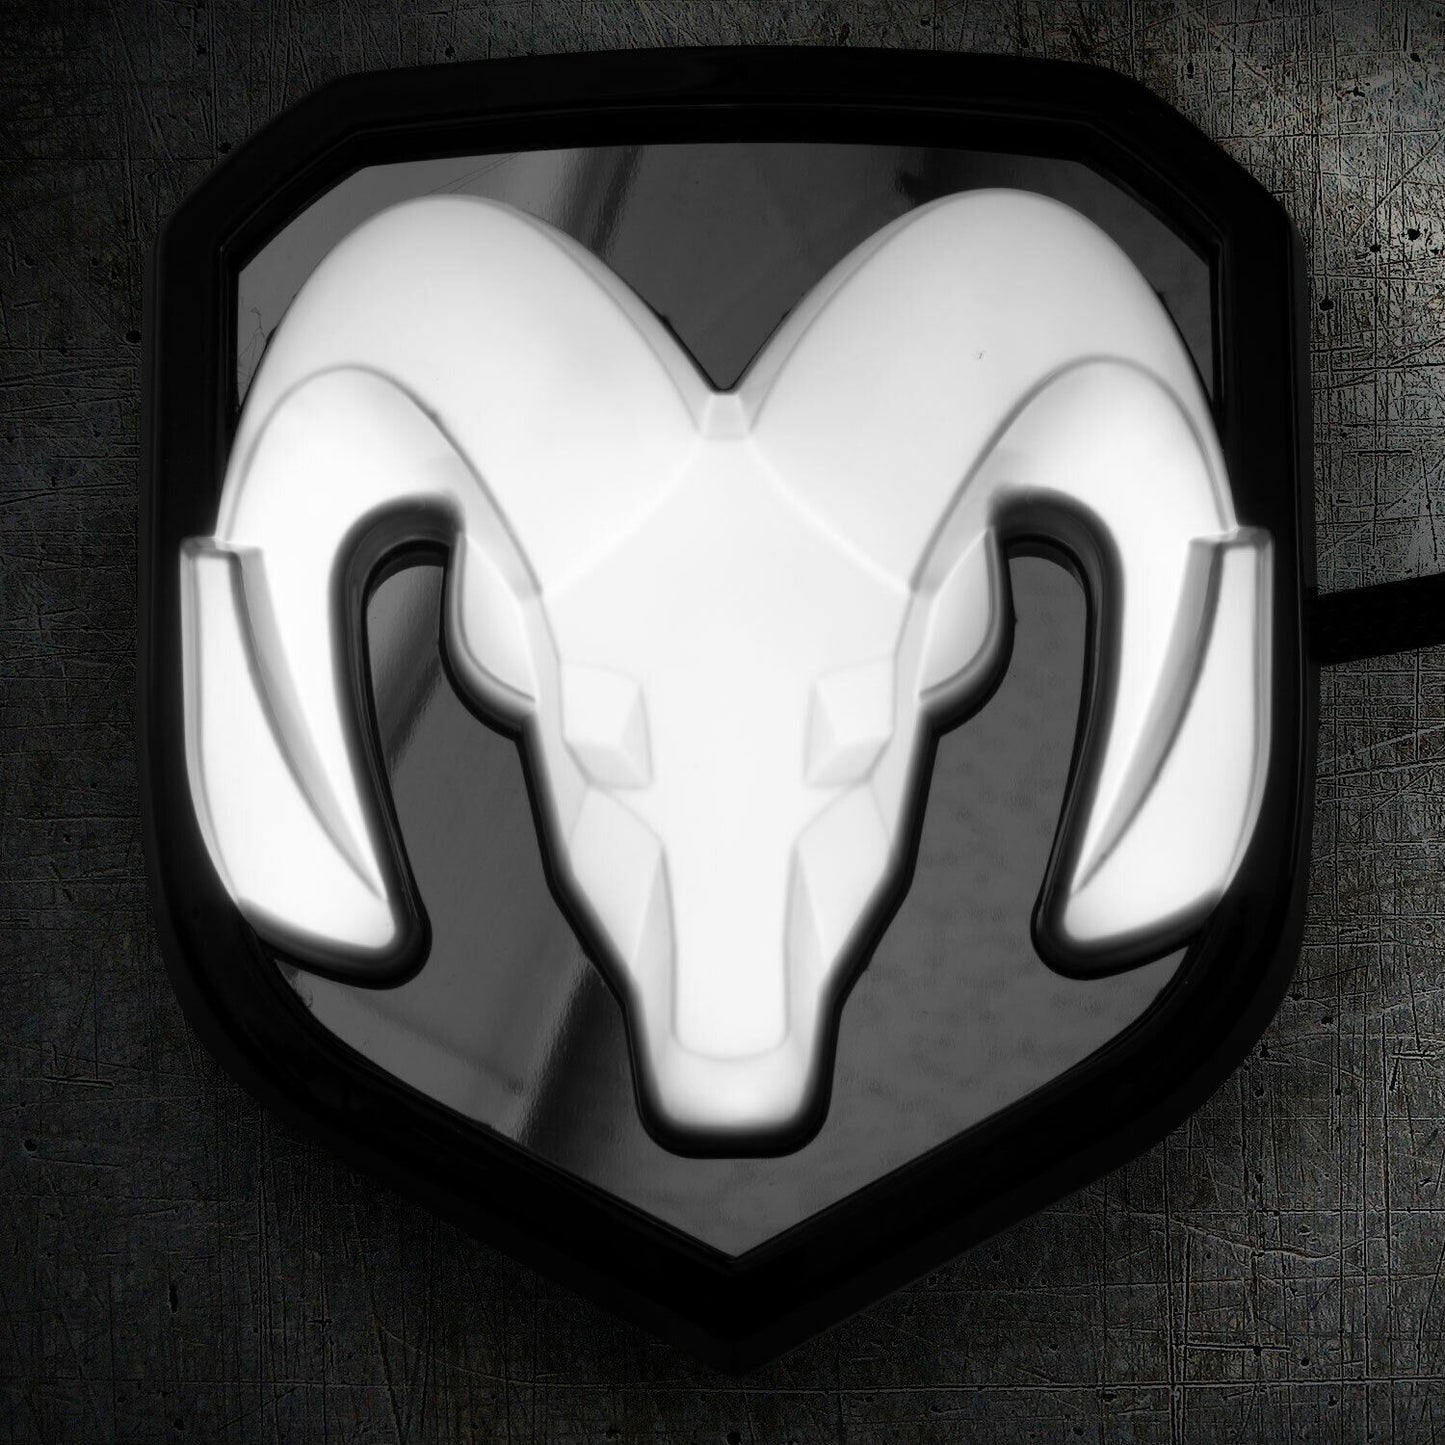 Lighted Grille Emblem Compatible with 2009-2018 Ram Dodge Grille Emblem